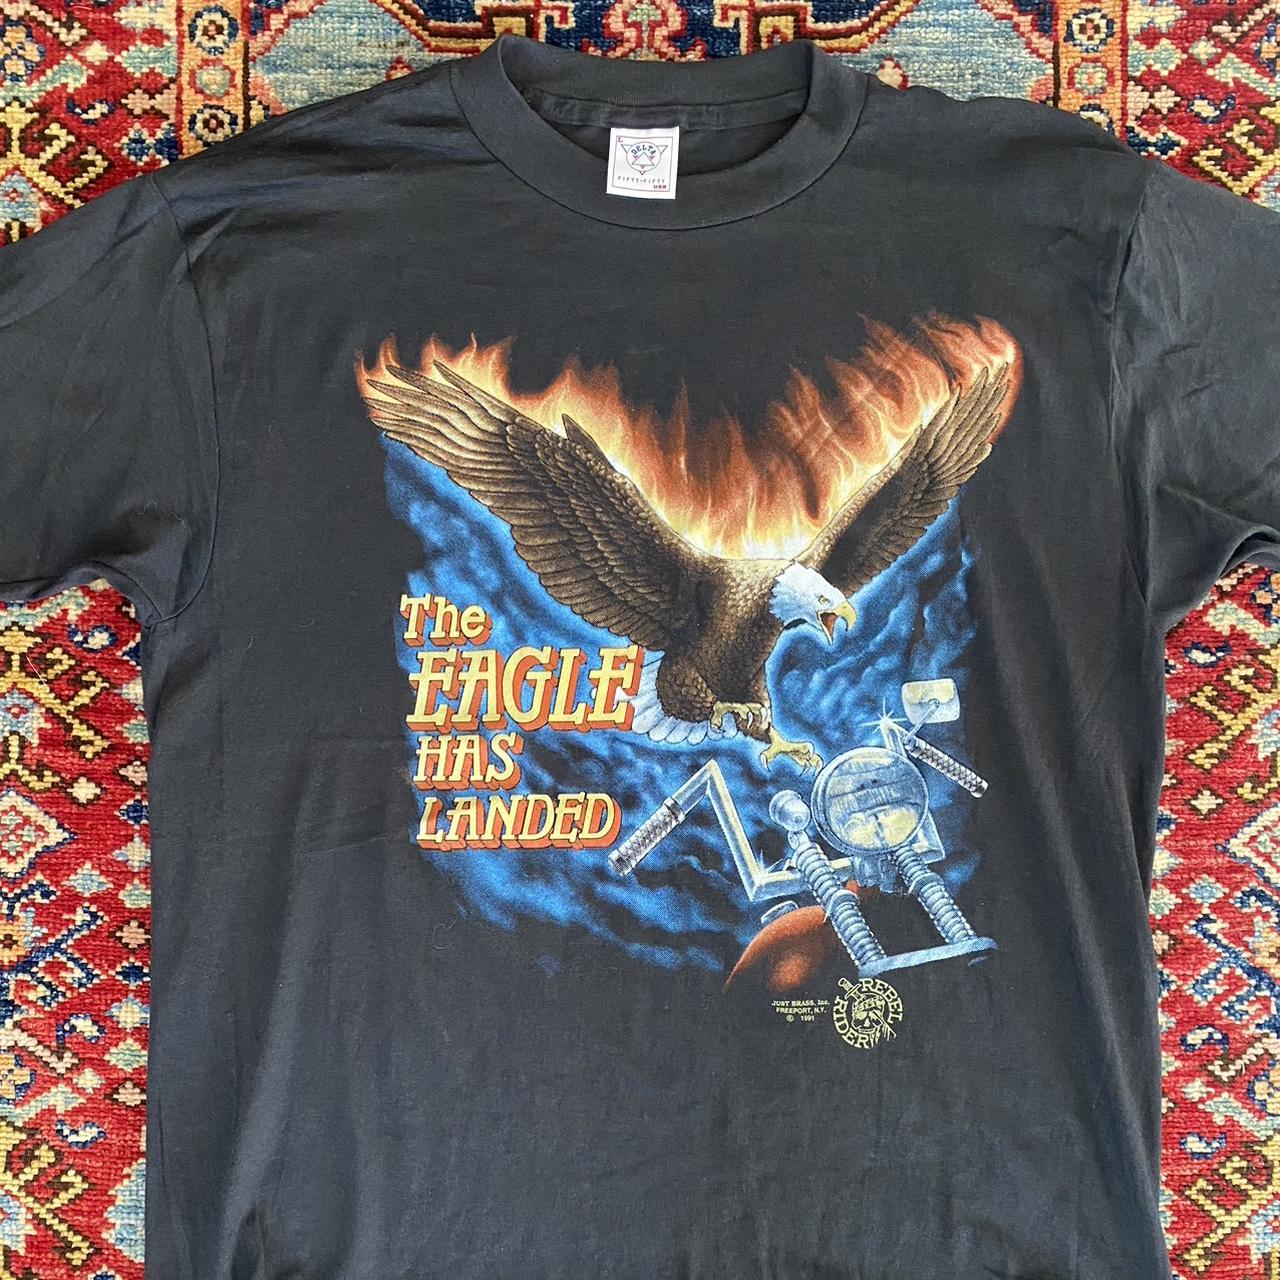 1991 The Eagle Has Landed Rebel Rider Just Brass... - Depop